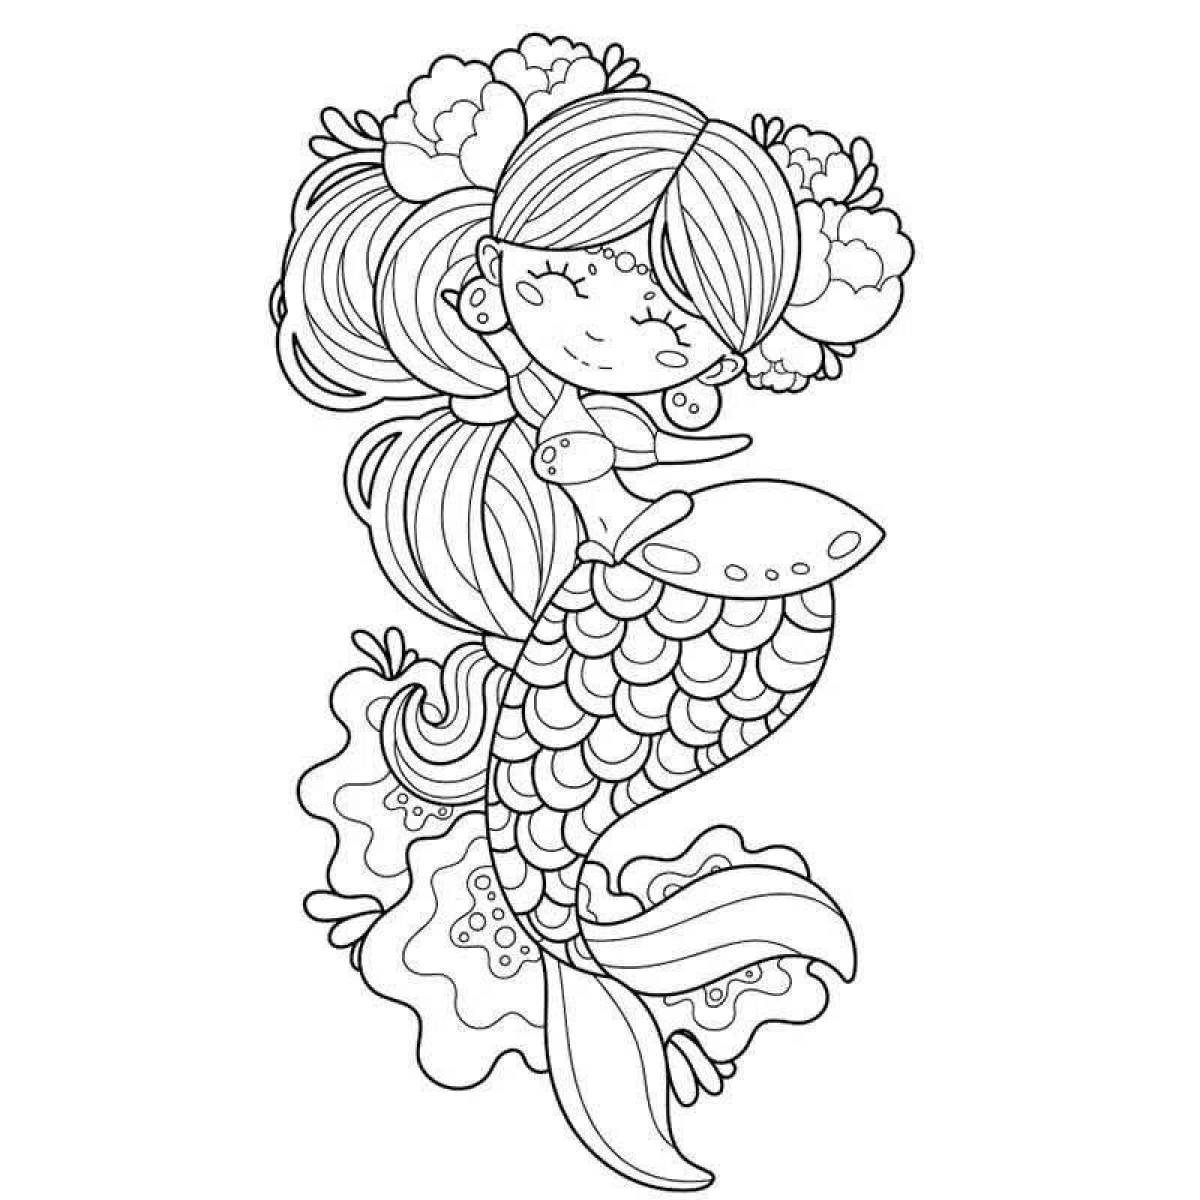 Great coloring cat mermaid